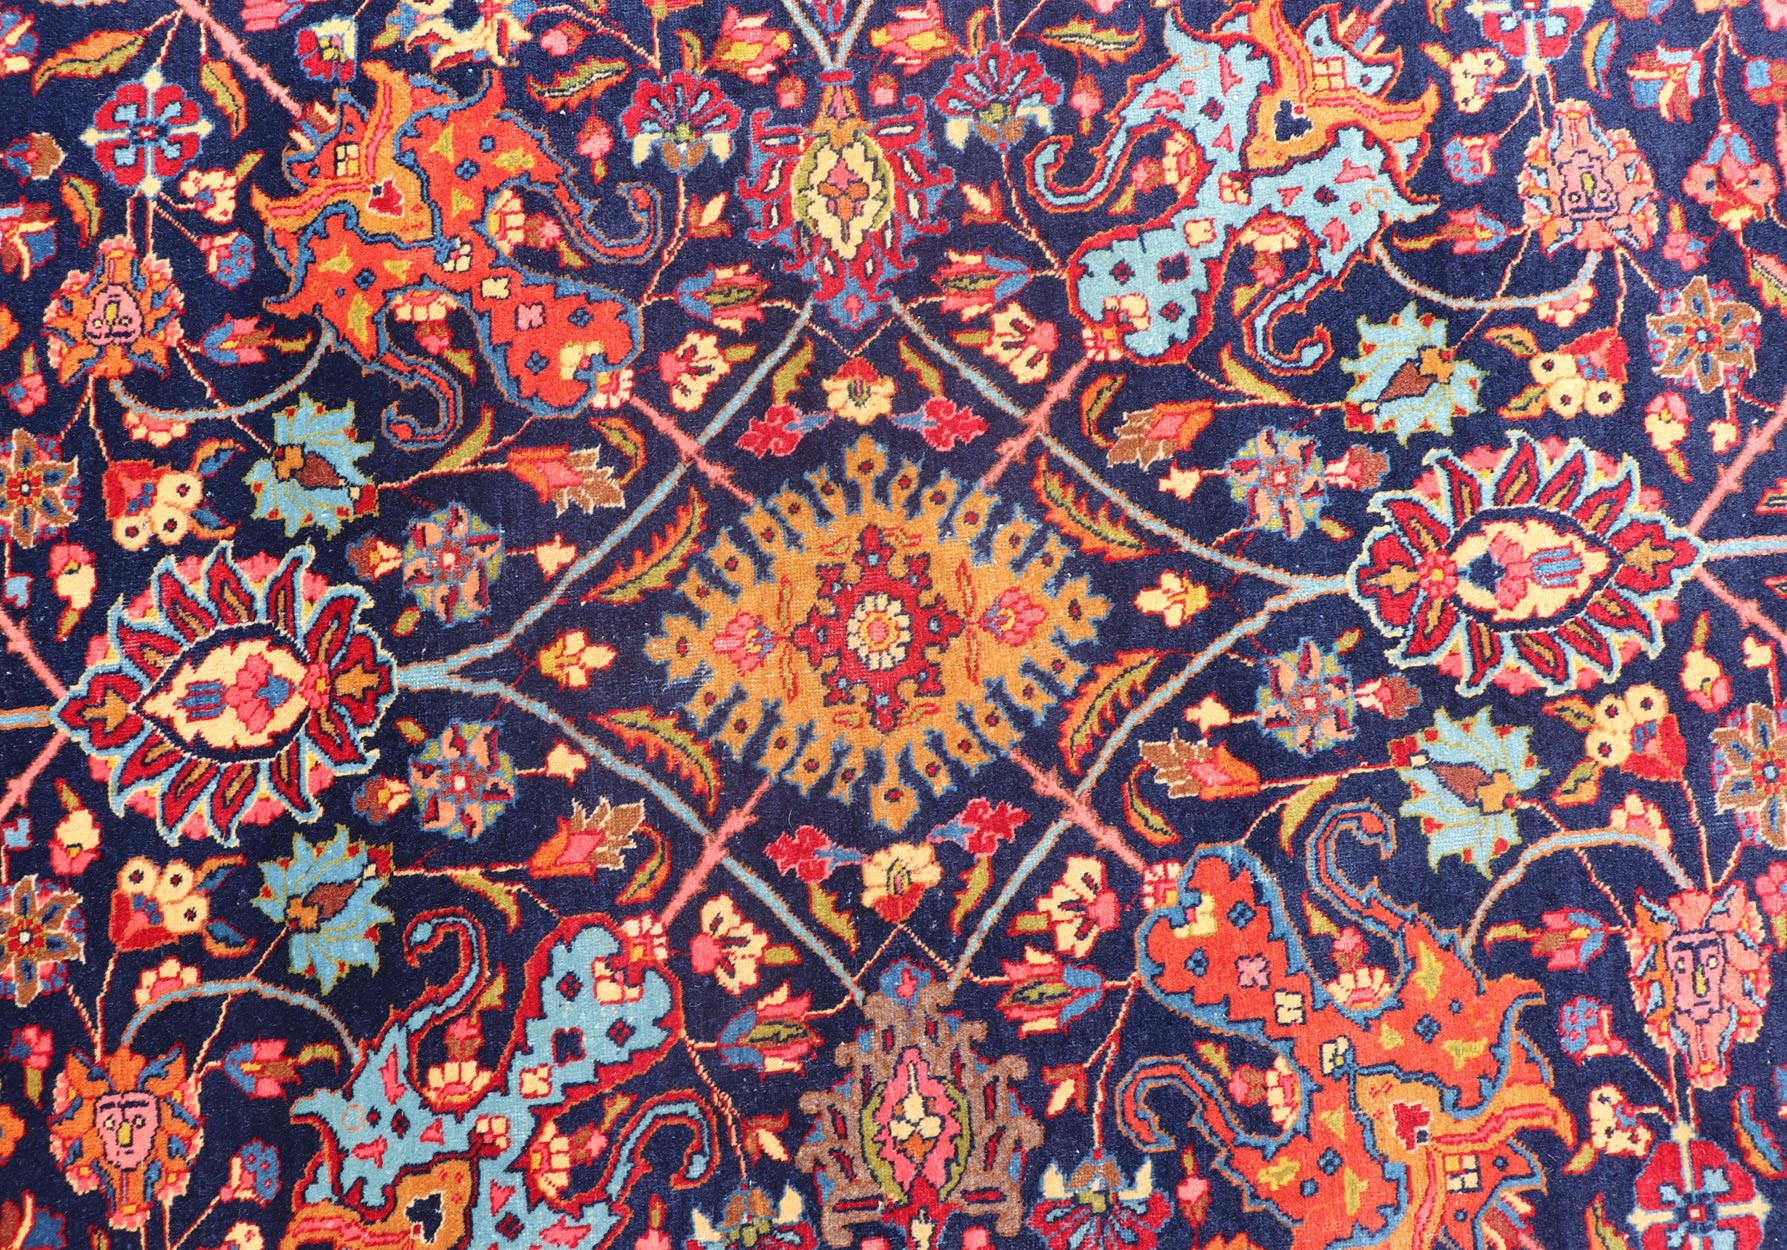 Grand tapis tabriz persan ancien à motifs subgéométriques et colorés. Pays d'origine : Iran ; Type : Tabriz ; Design/One : Floral, Sub-Geometric Floral, All-Over ; Keivan Woven Arts : rug PTA-200729 ; Large Hand-Knotted Antique Persian Tabriz Rug